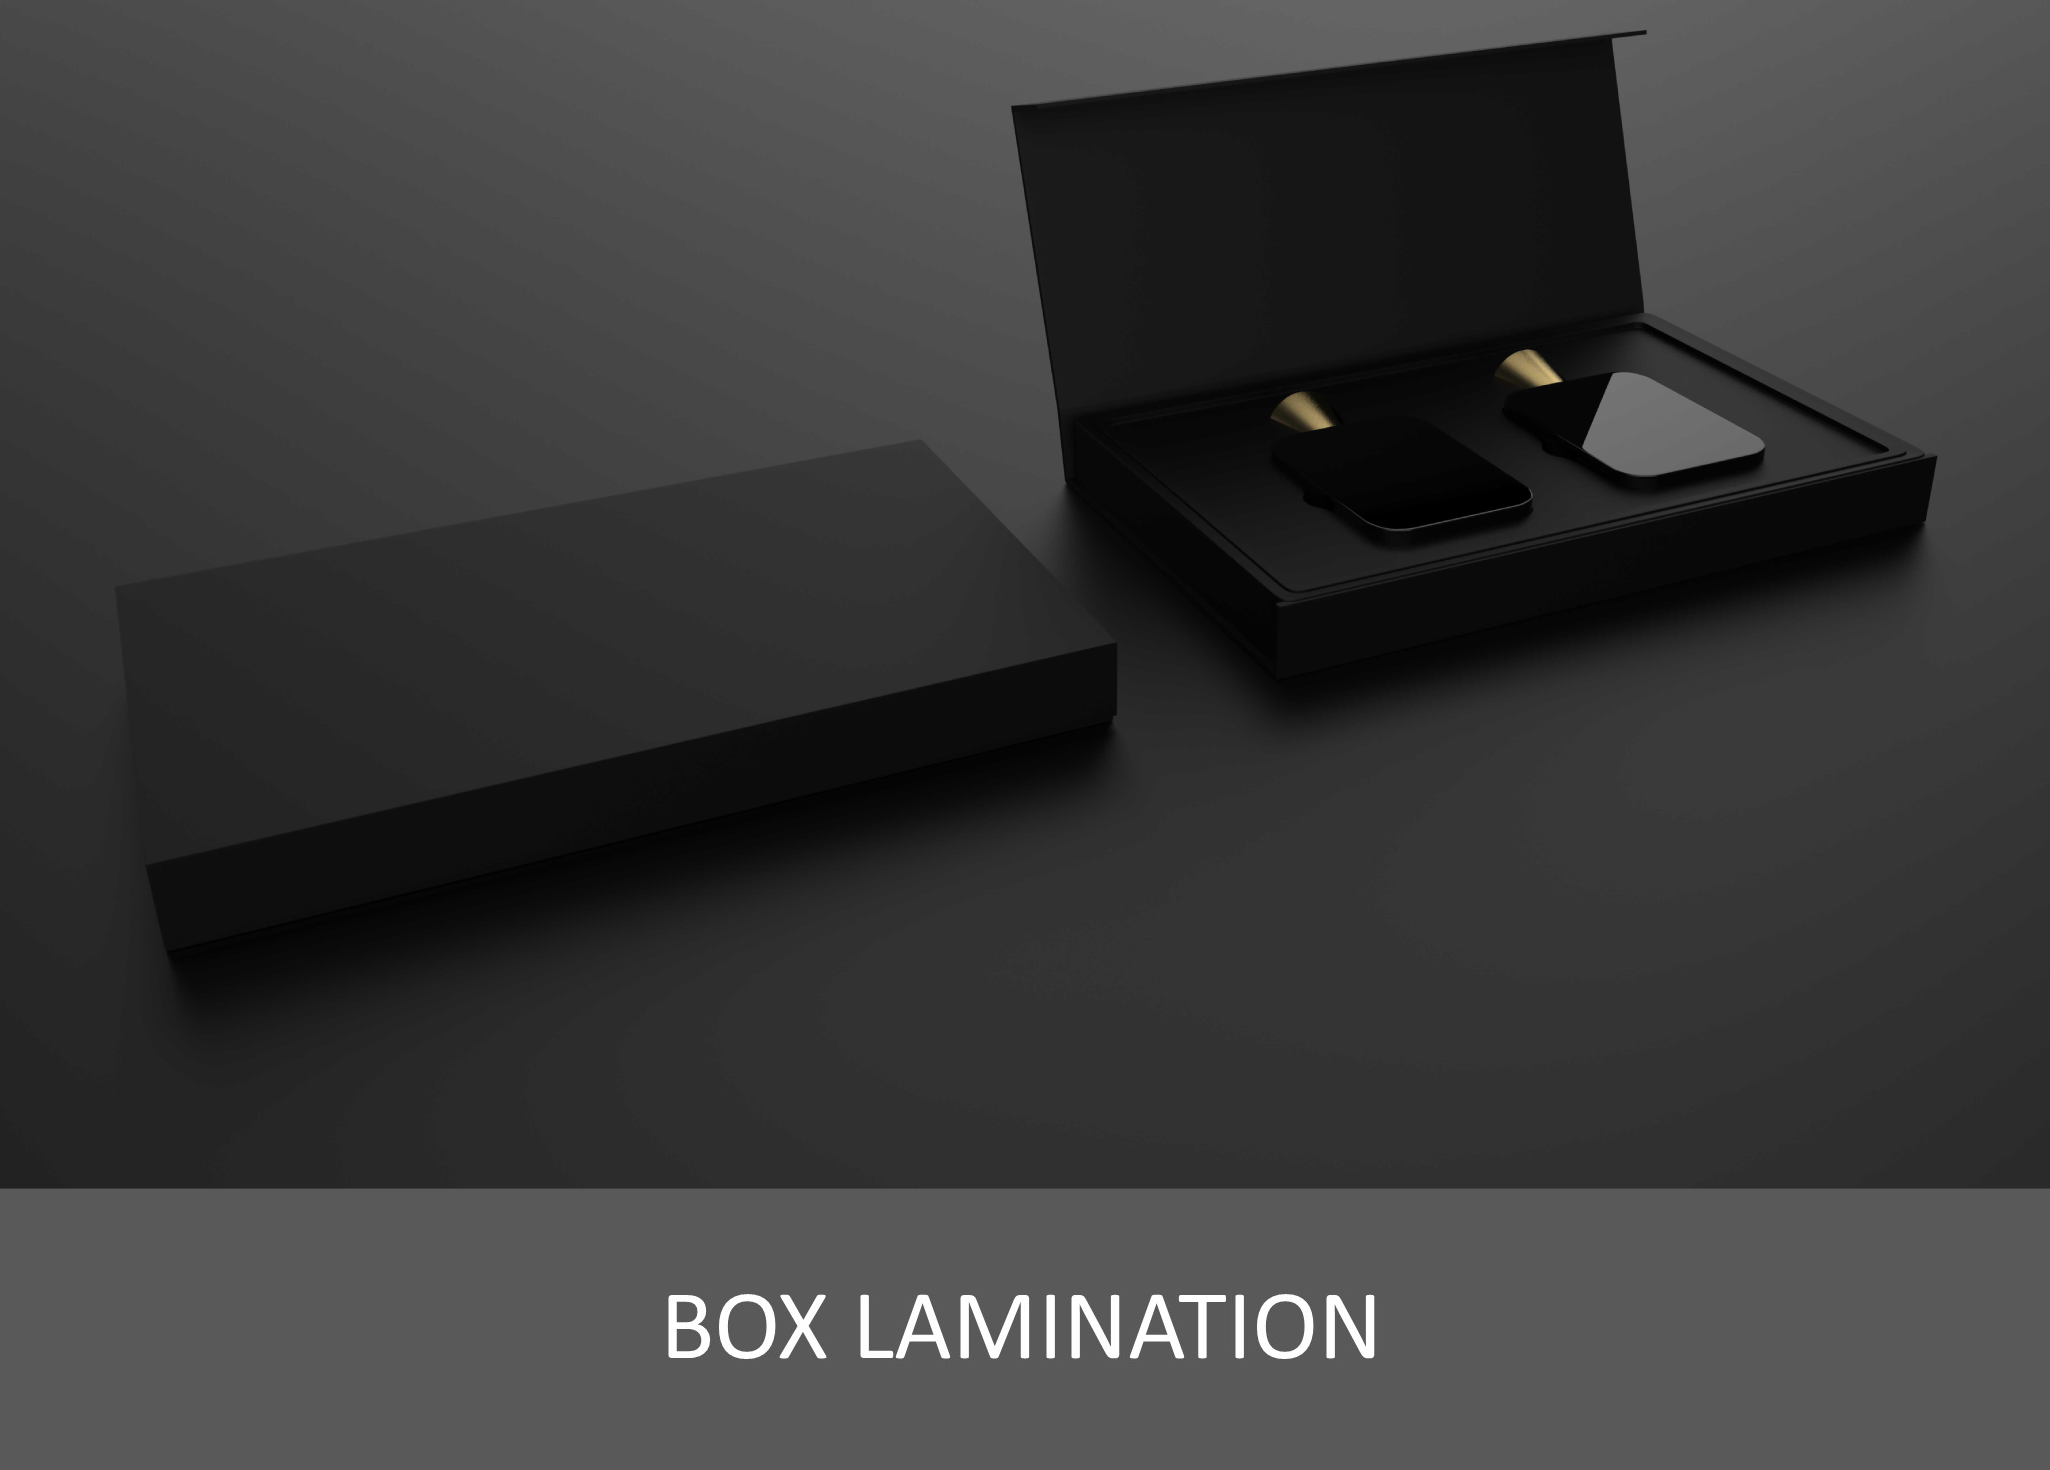 Box lamination